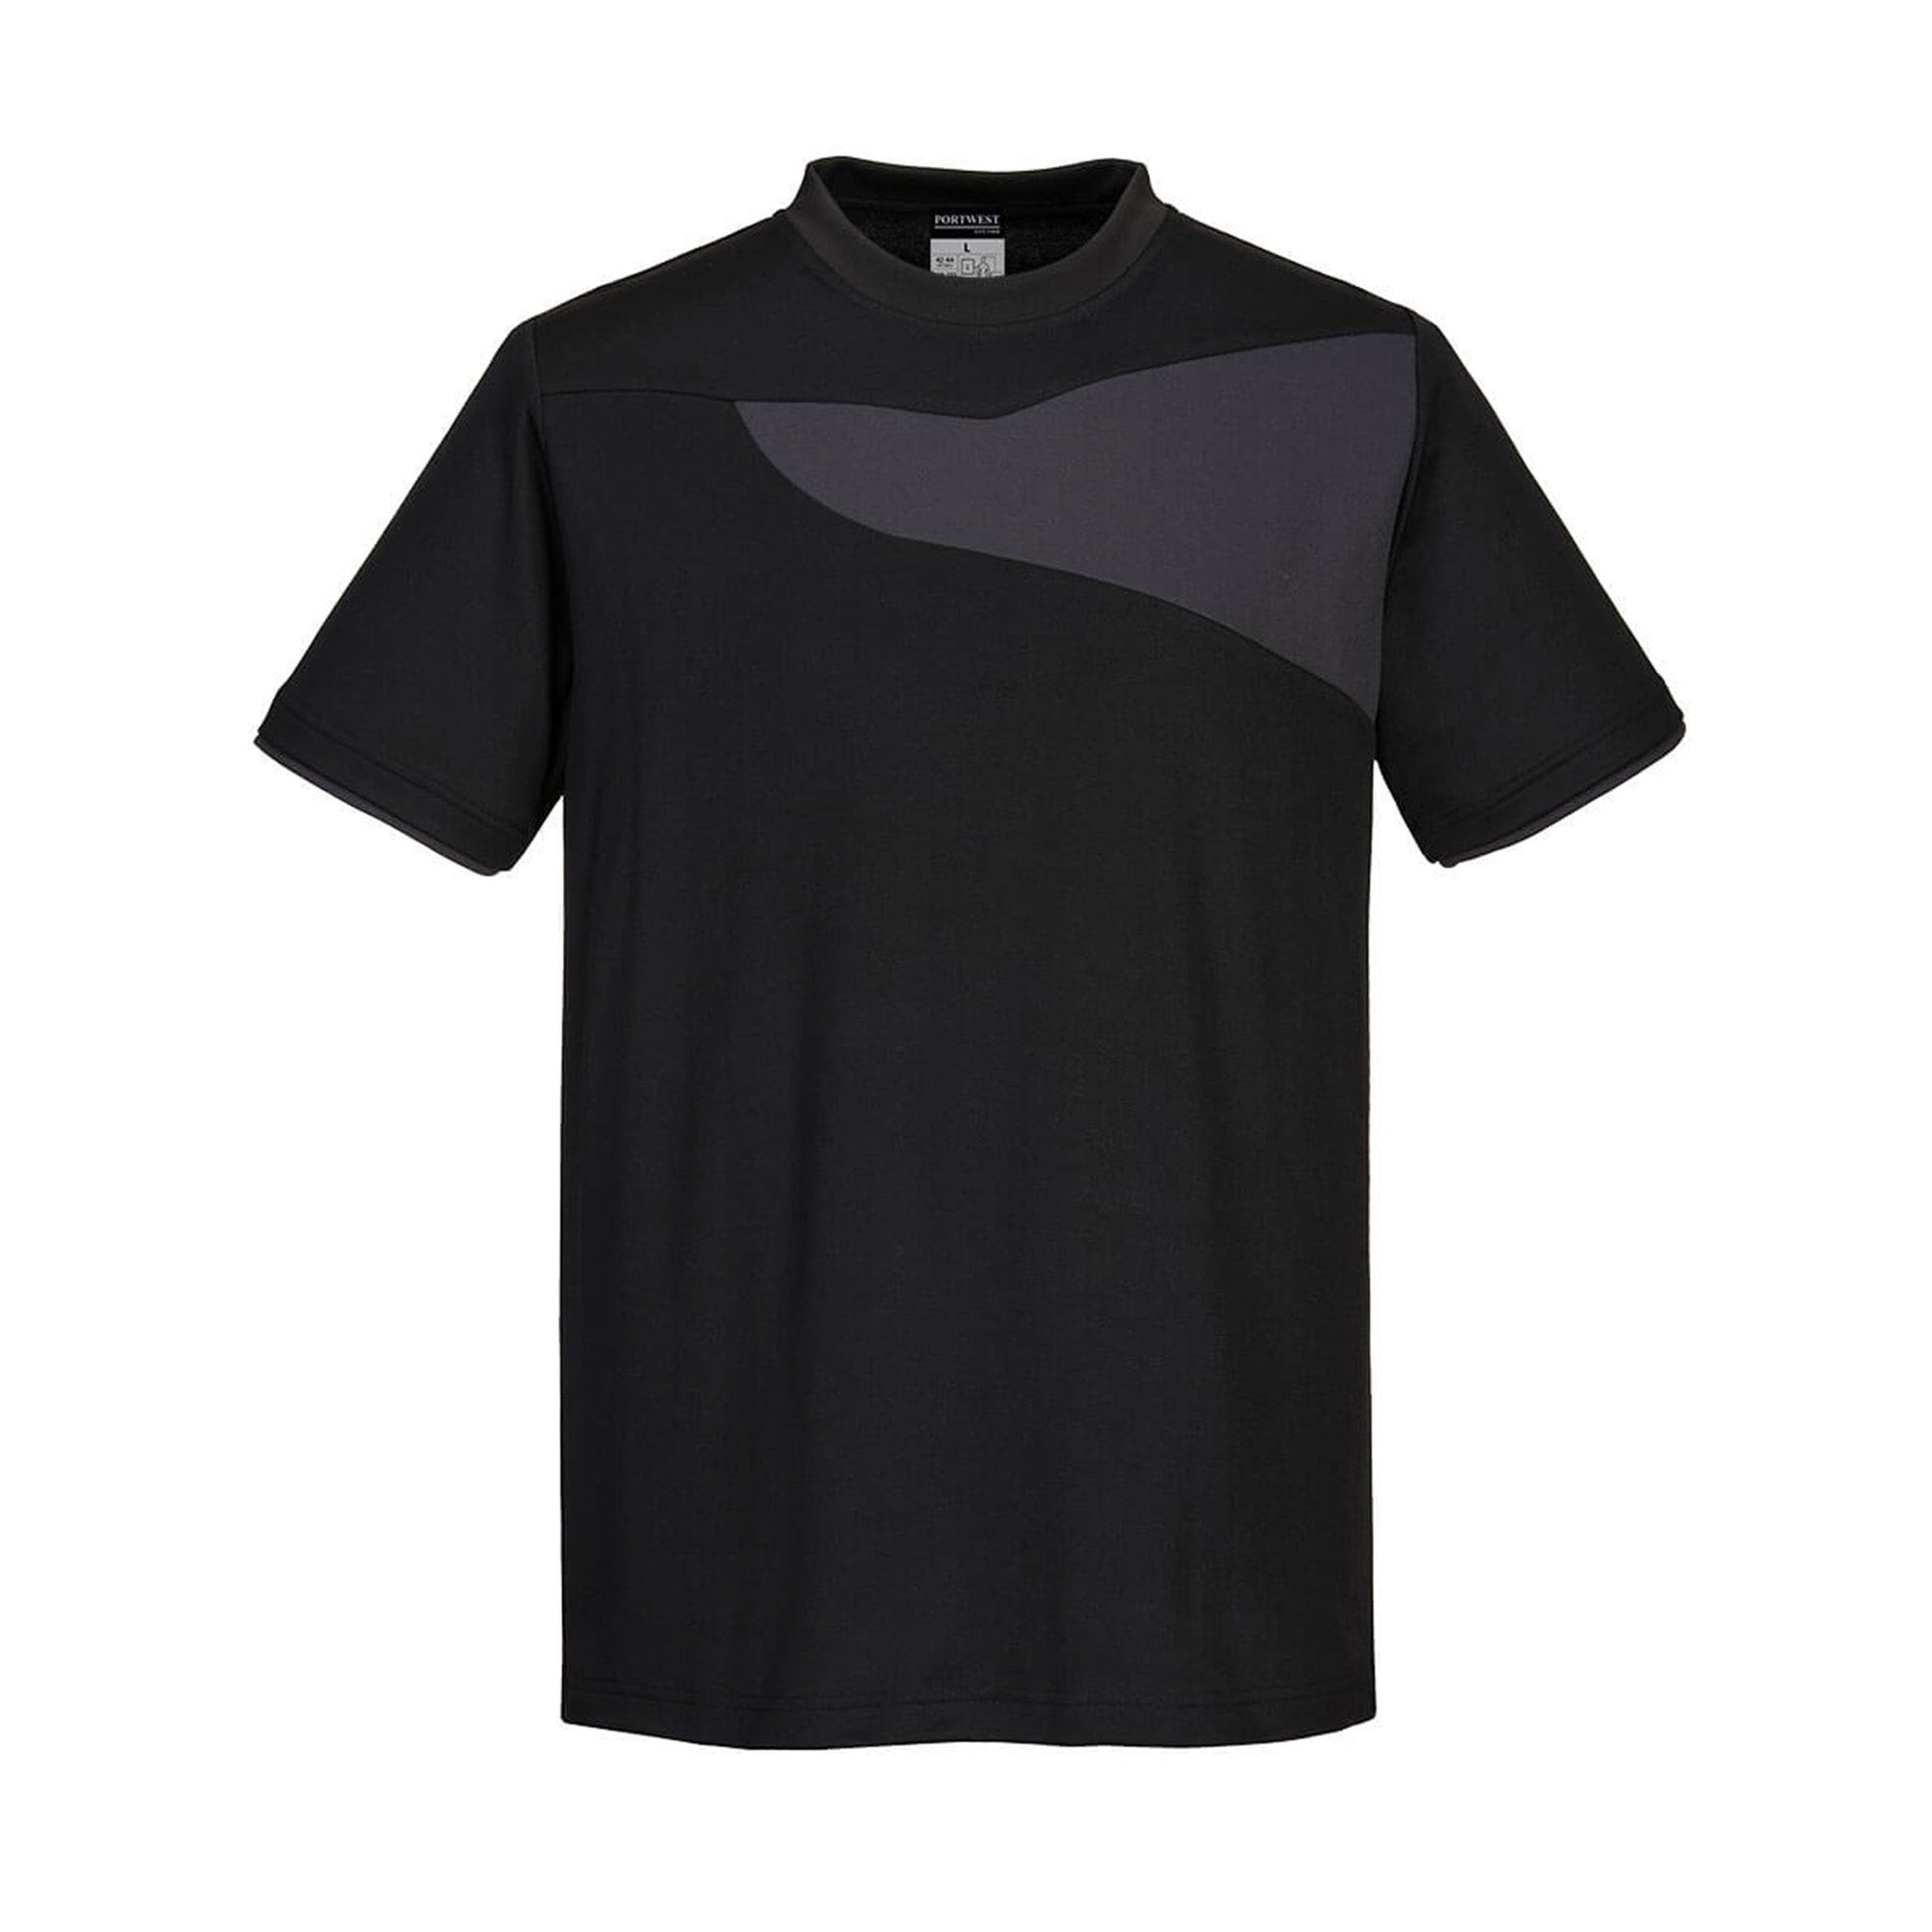 Portwest PW2 Cotton Comfort T-Shirt PW211 Black/zoom grey